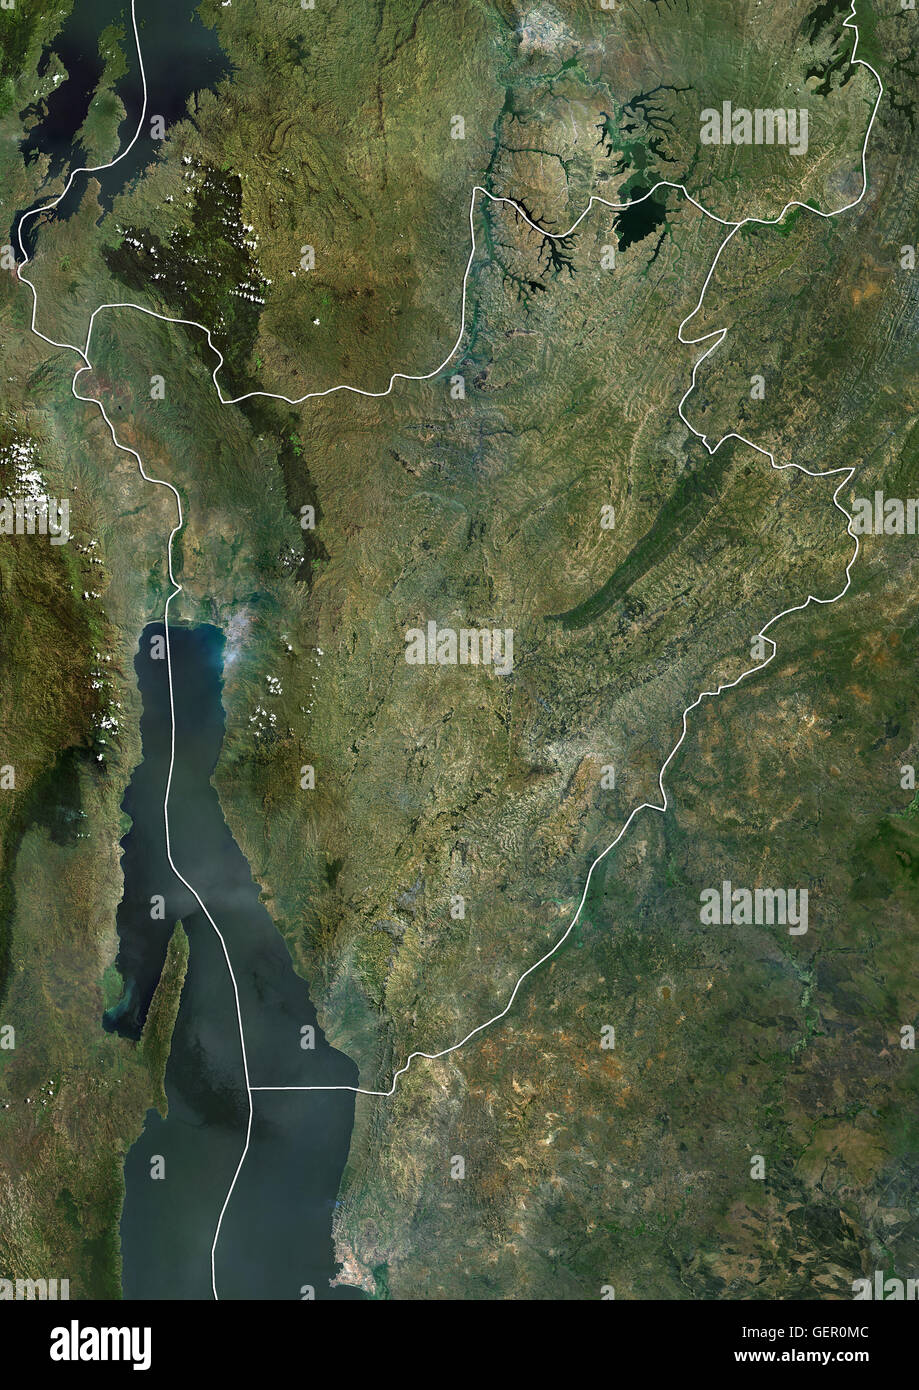 Satellitenansicht von Burundi (mit Ländergrenzen). Dieses Bild wurde aus Daten von Landsat-Satelliten erworben erstellt. Stockfoto